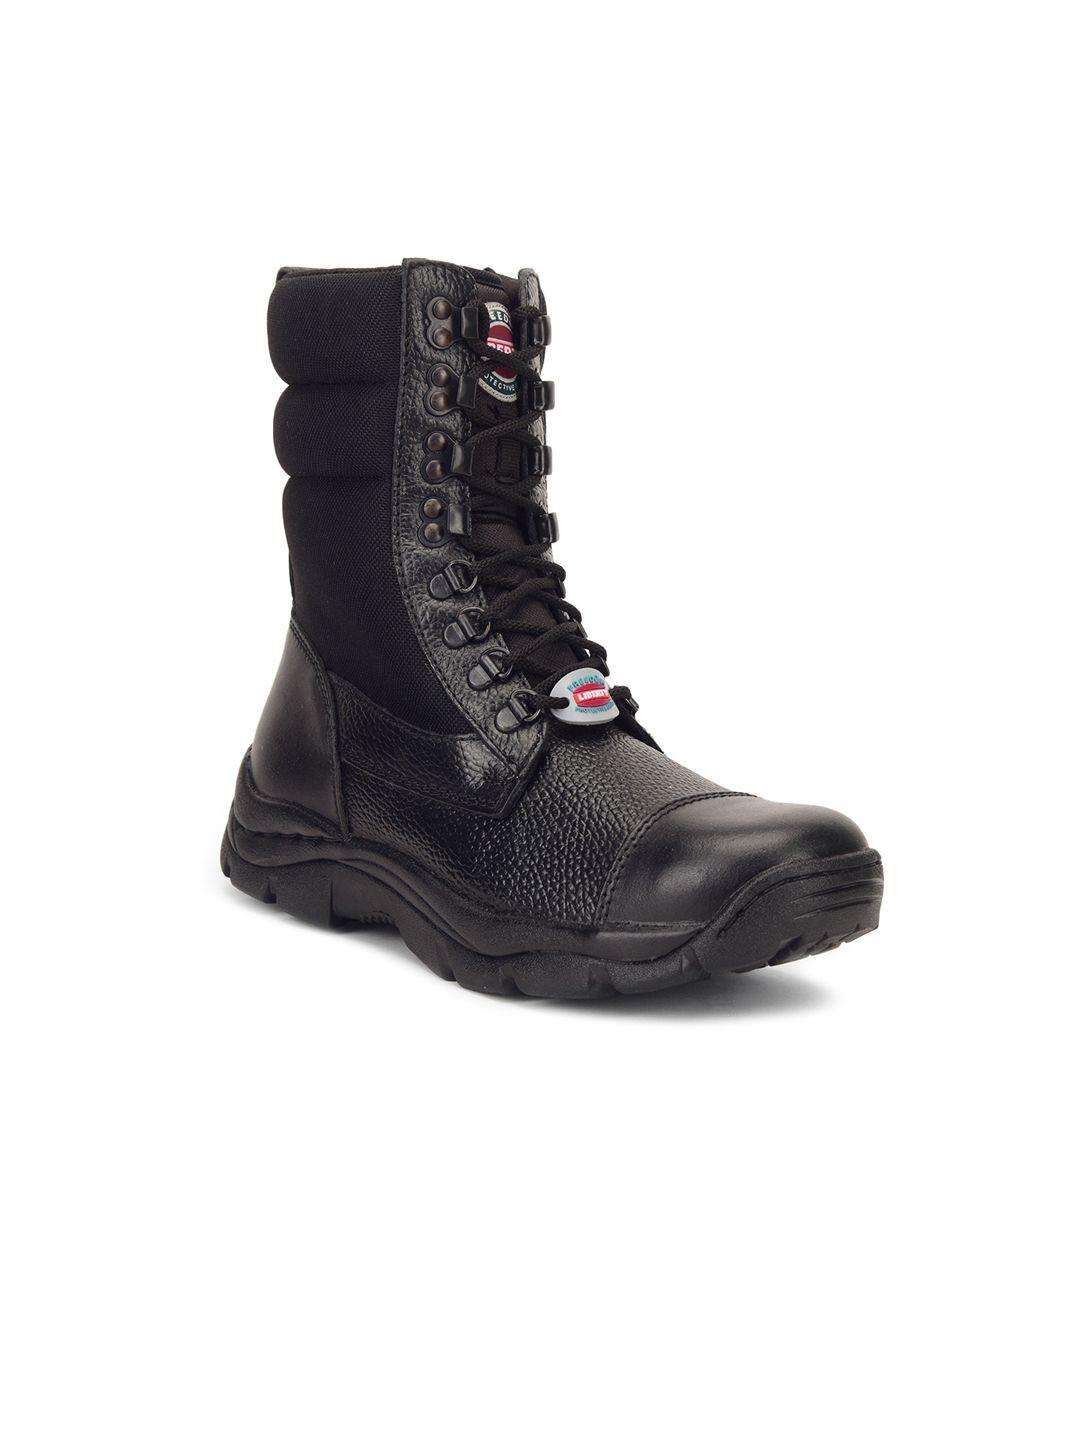 liberty men black high-top flat boots